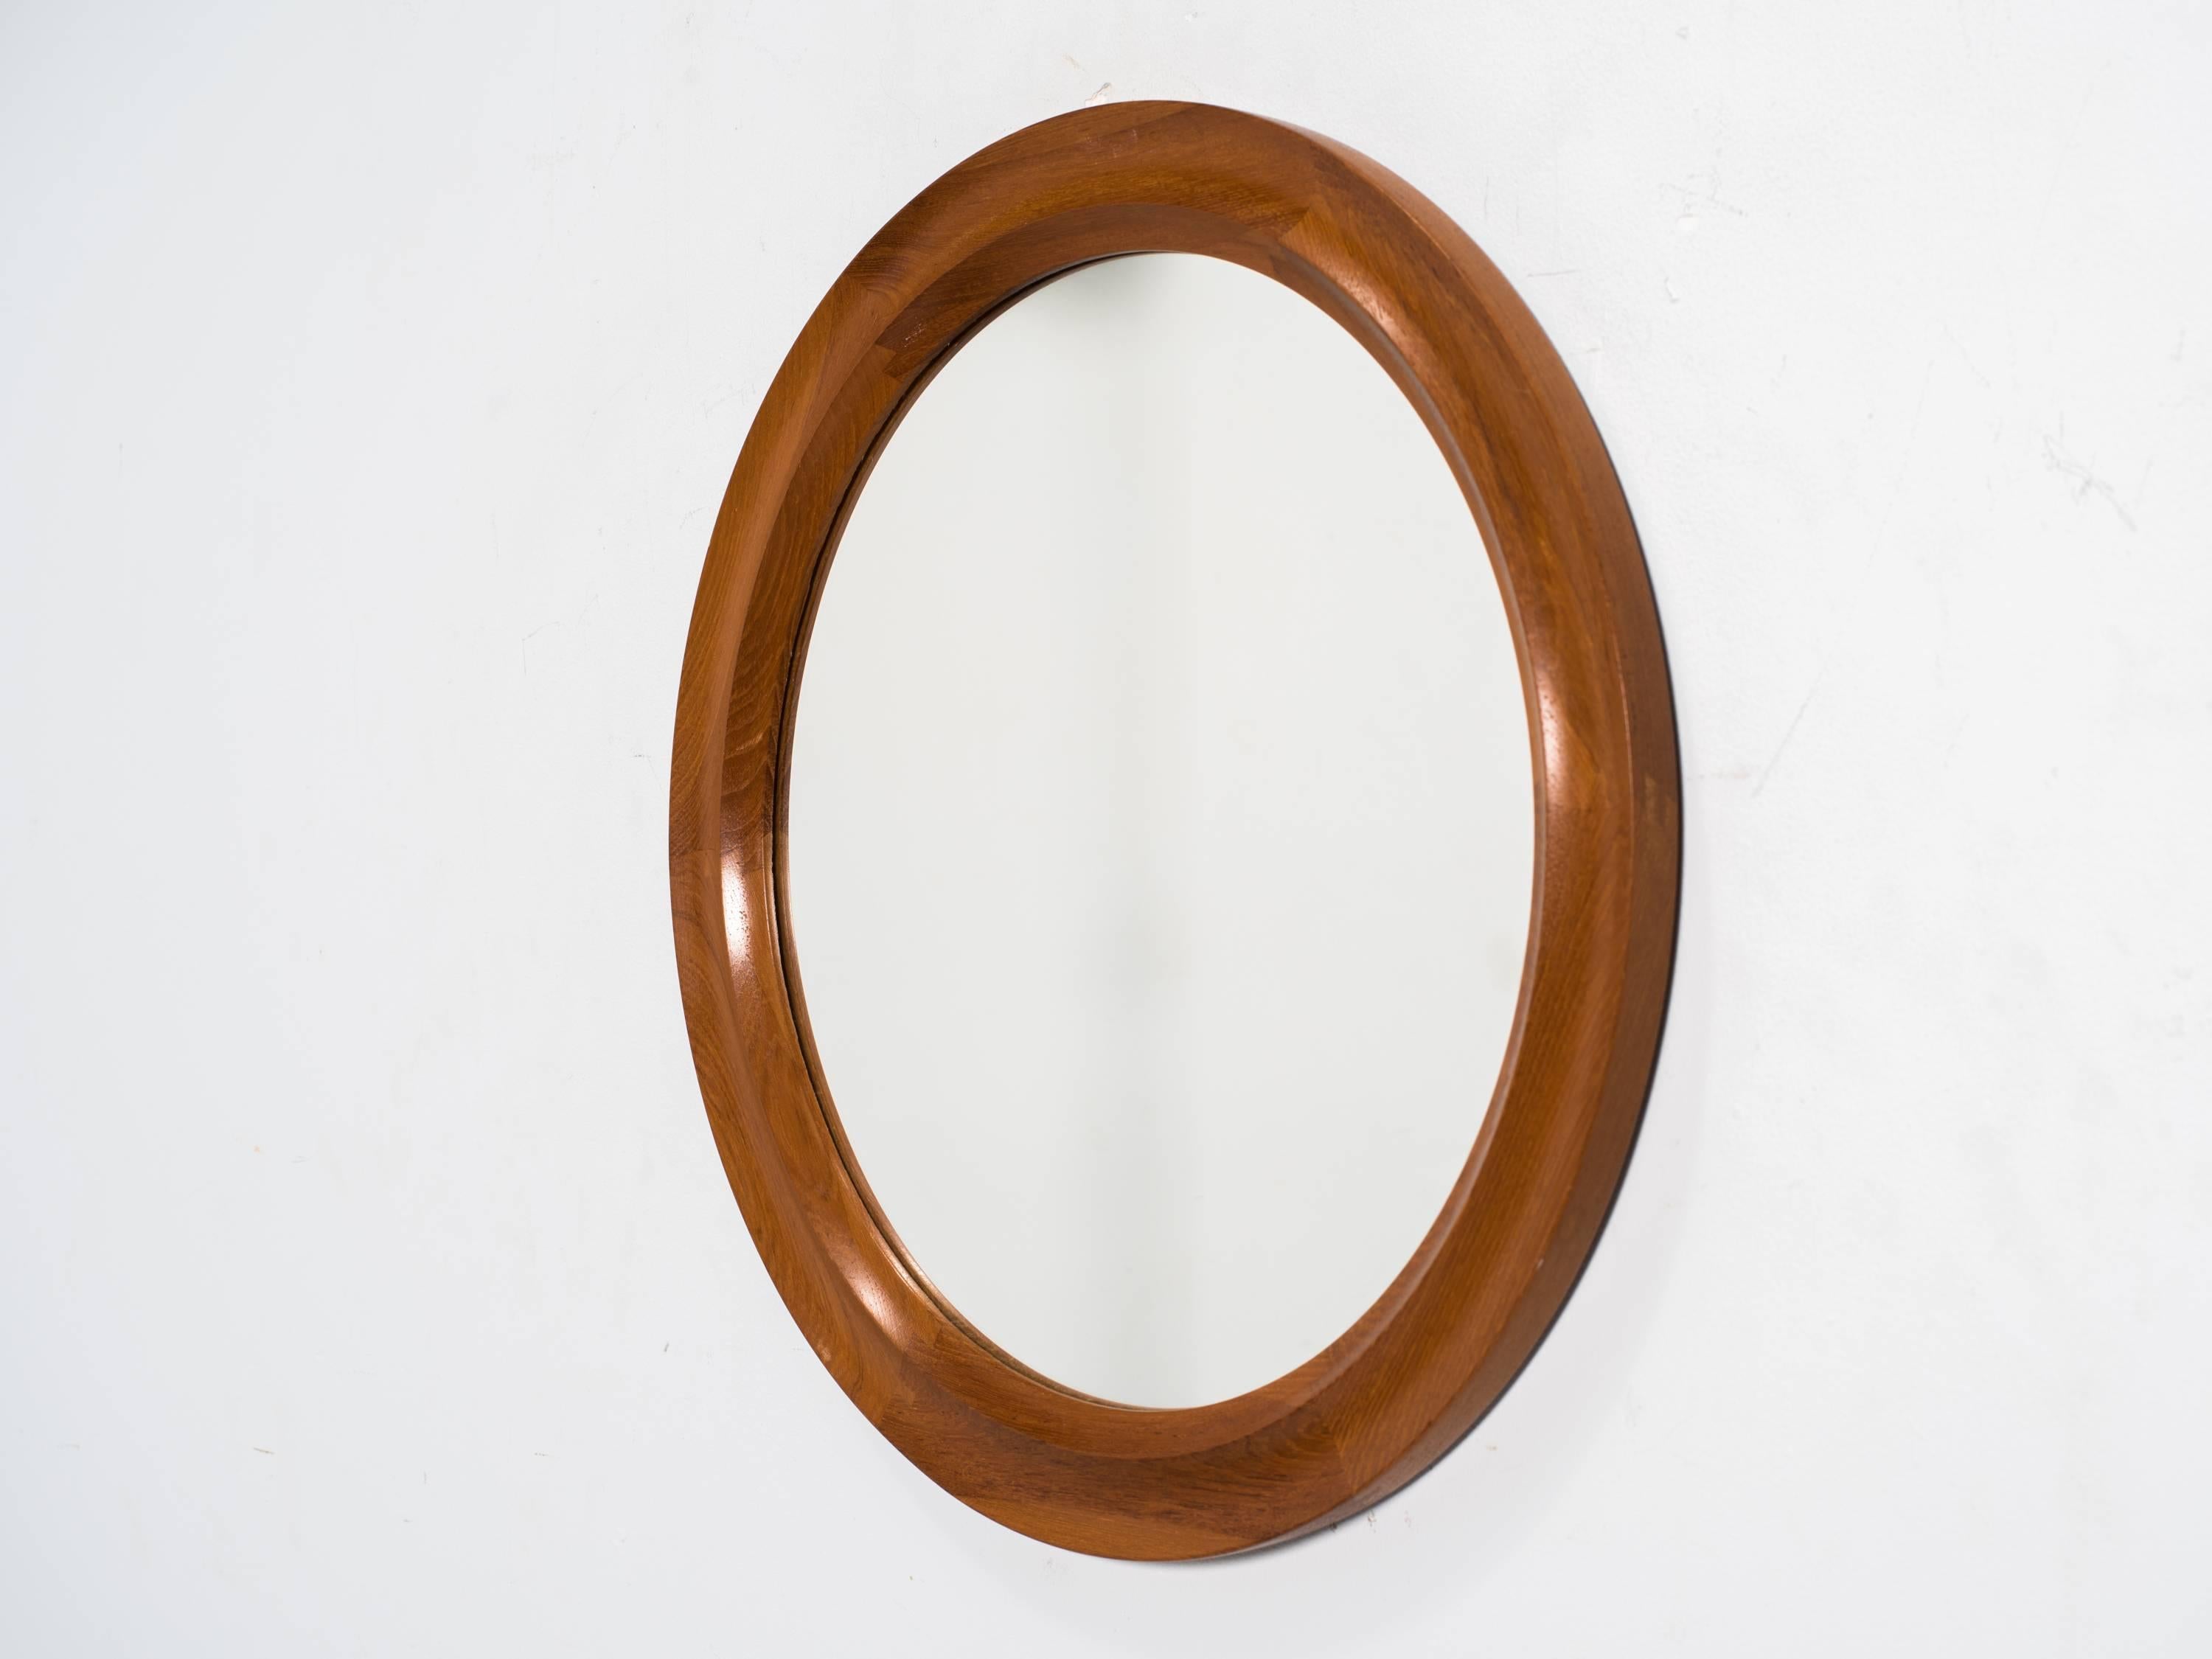 Danish modern round teak wall mirror by Pedersen & Hansen.